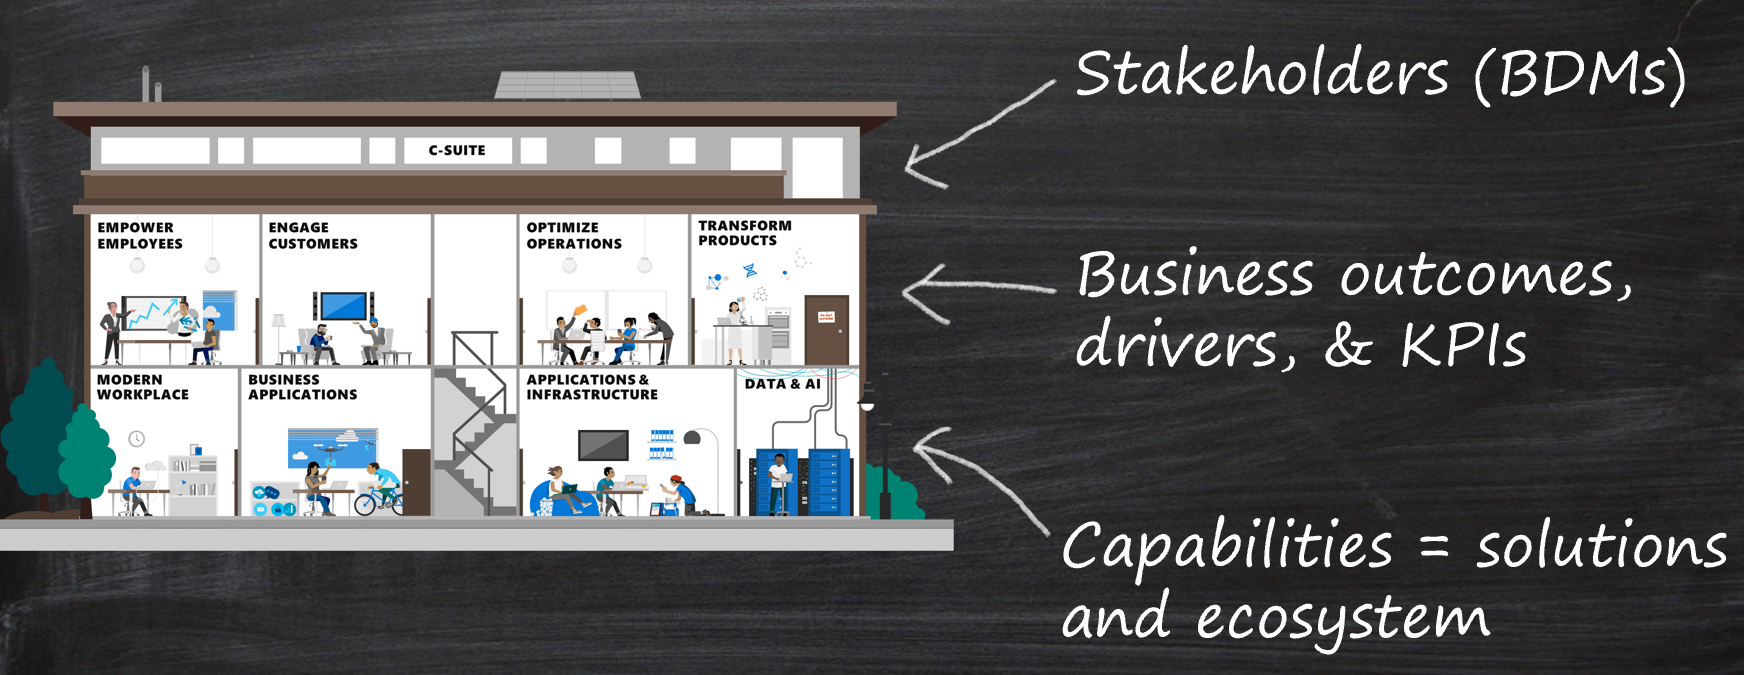 Risultati aziendali visualizzati come una casa con gli stakeholder, sui risultati aziendali, sulle funzionalità tecniche